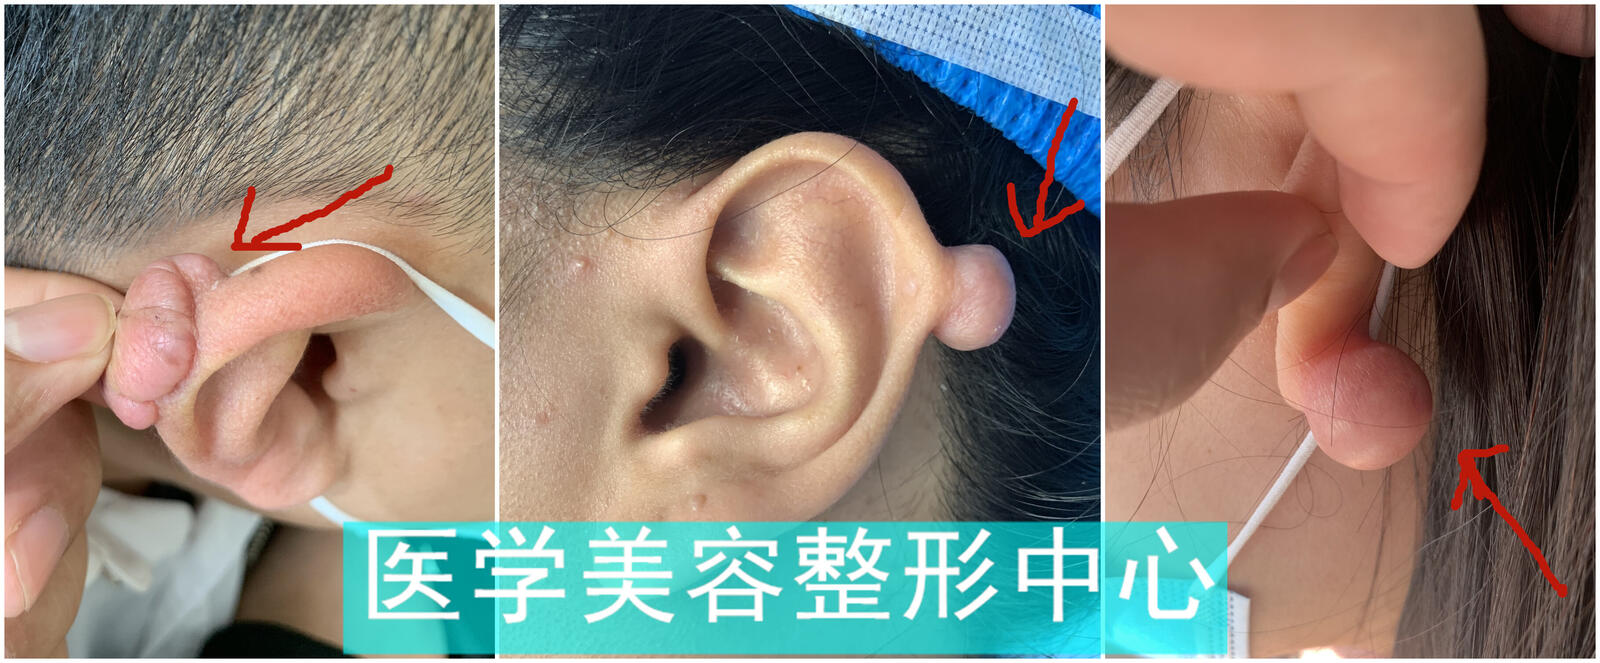 耳部瘢痕疙瘩亦为瘢痕疙瘩的一种,常见于耳垂,耳轮等部位,其质地坚硬